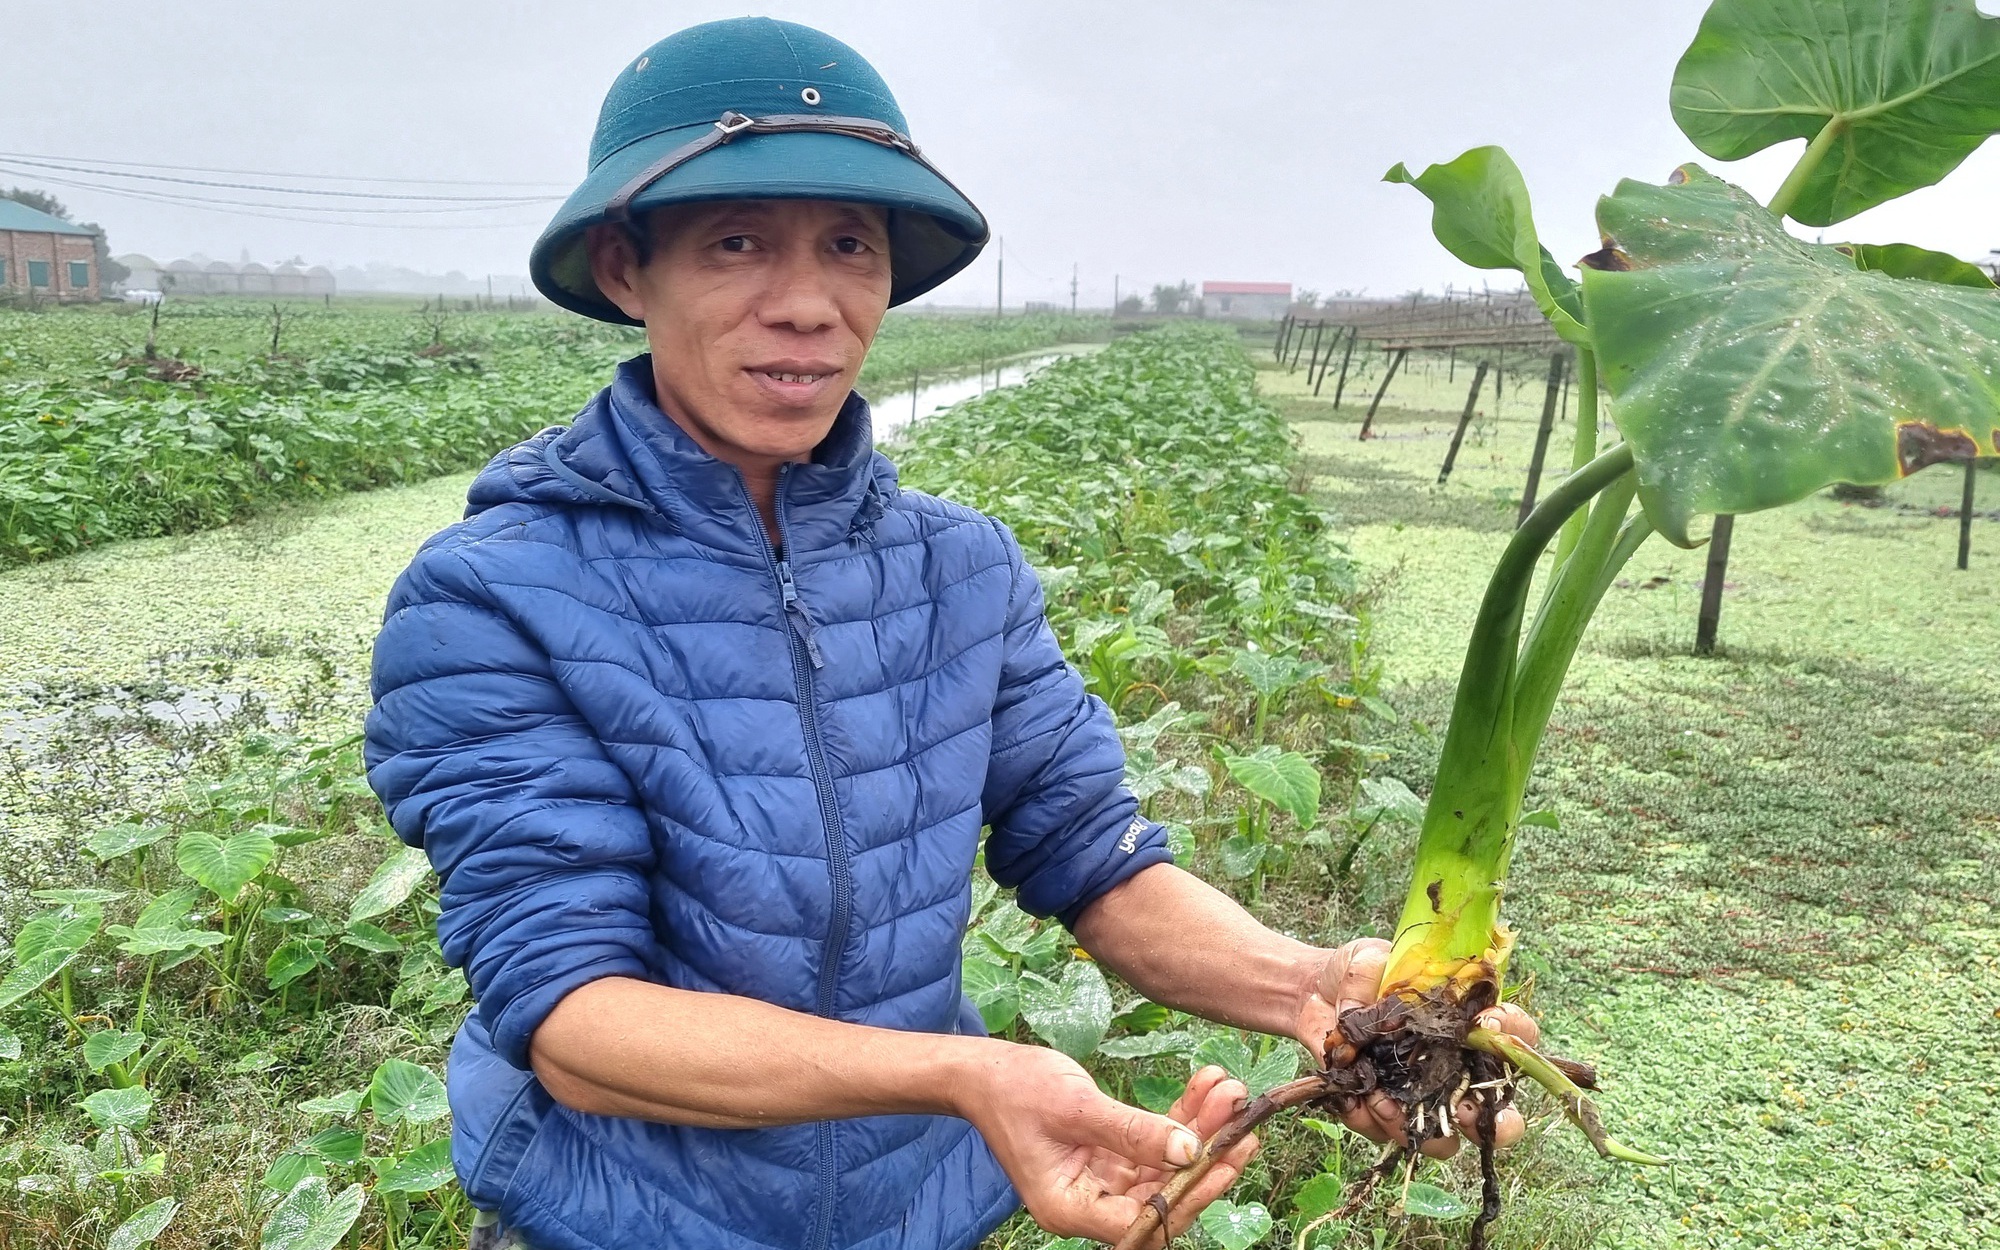 Thâm niên 25 năm giáo viên vẫn bỏ nghề về trồng khoai môn ngọt Thái Lan ở Ninh Bình, lãi 300 triệu/năm